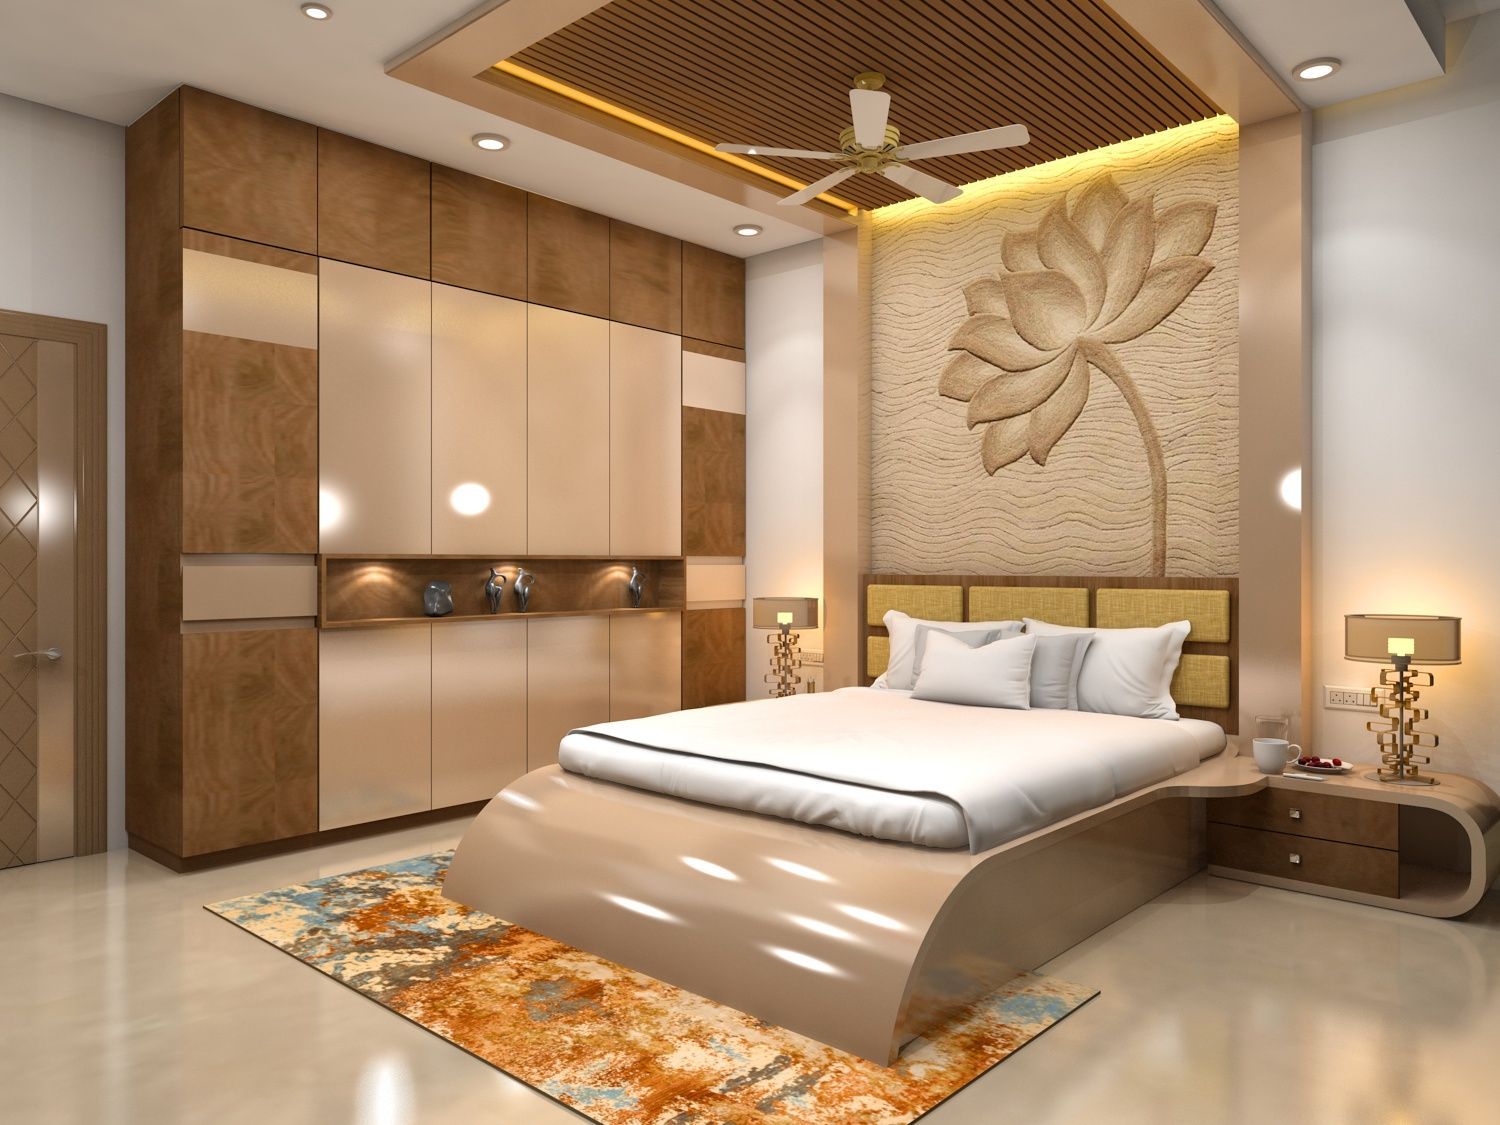 bedroom interior design , bedroom interior ideas ,